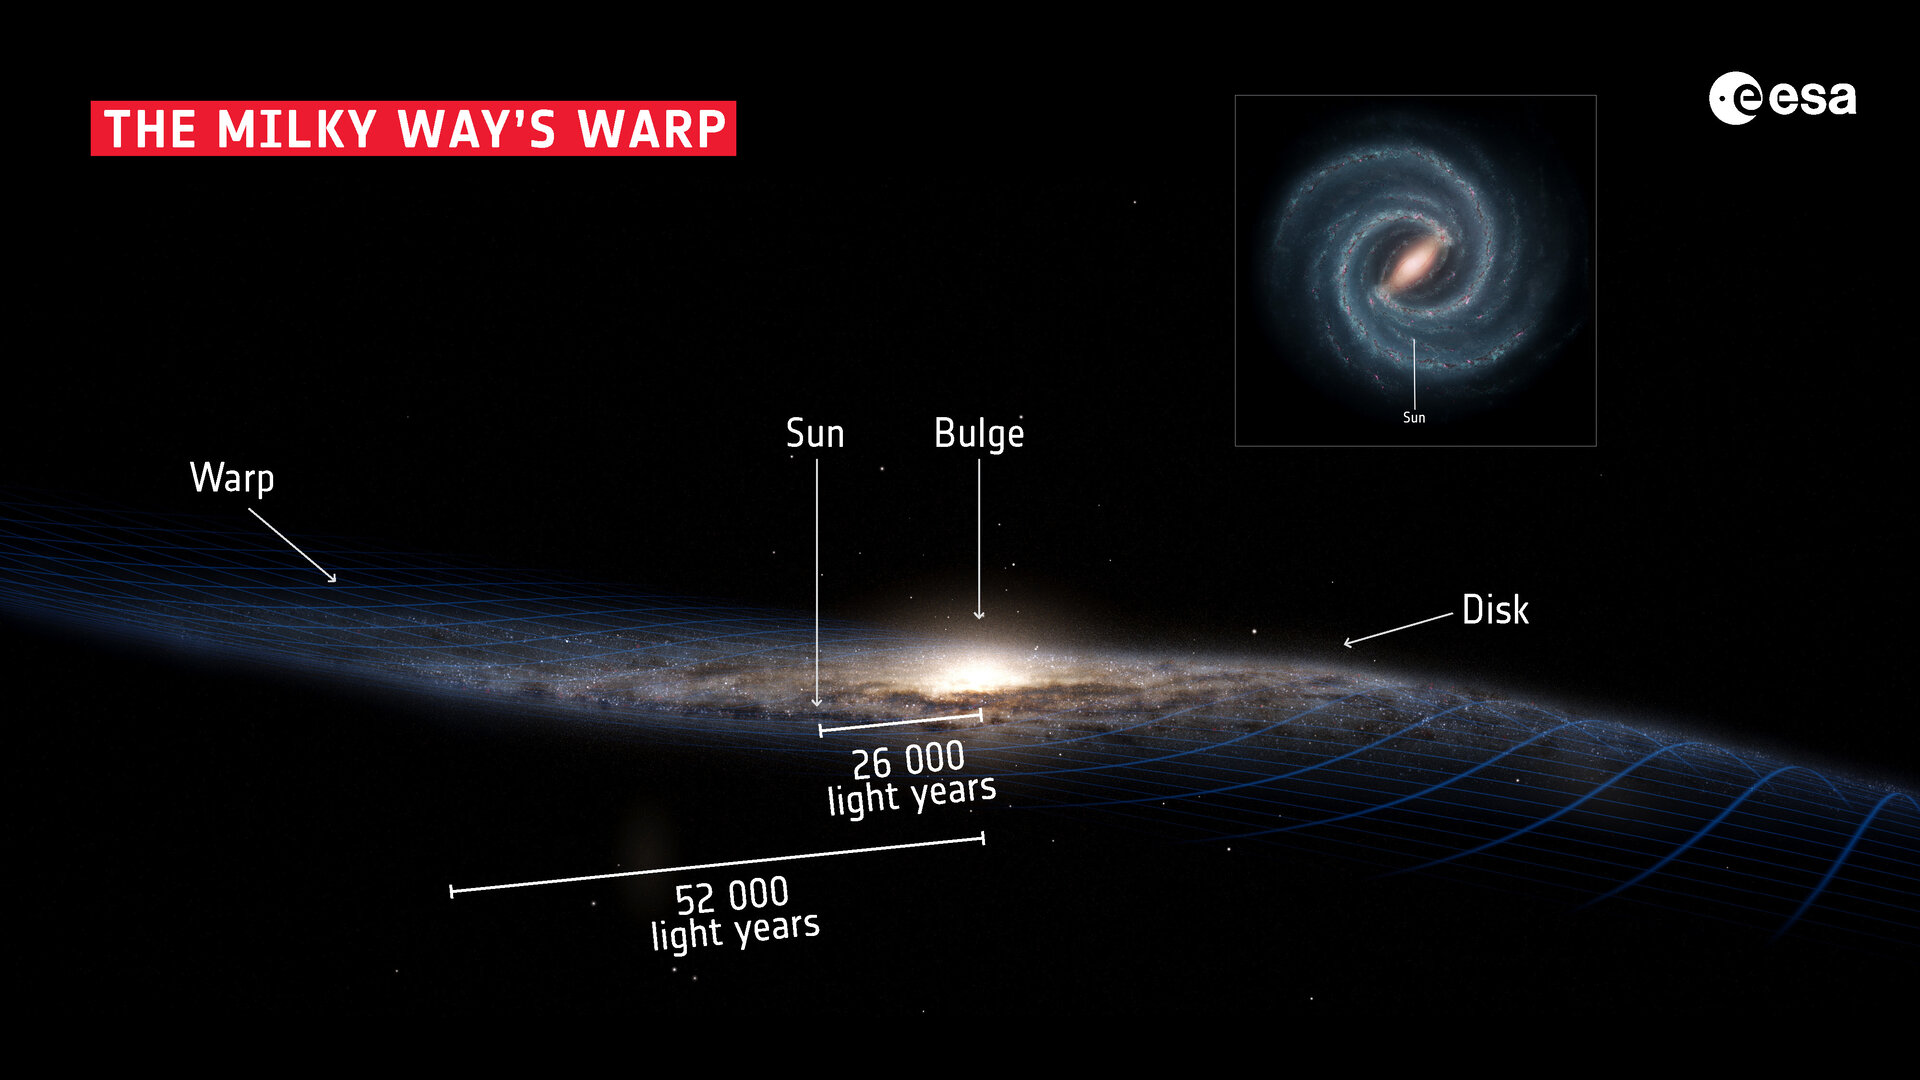 Местоположение солнца. Структура Галактики Млечный путь. Толщина Галактики Млечный путь. Состав Млечного пути нашей Галактики. Состав и строение Галактики Млечный путь.